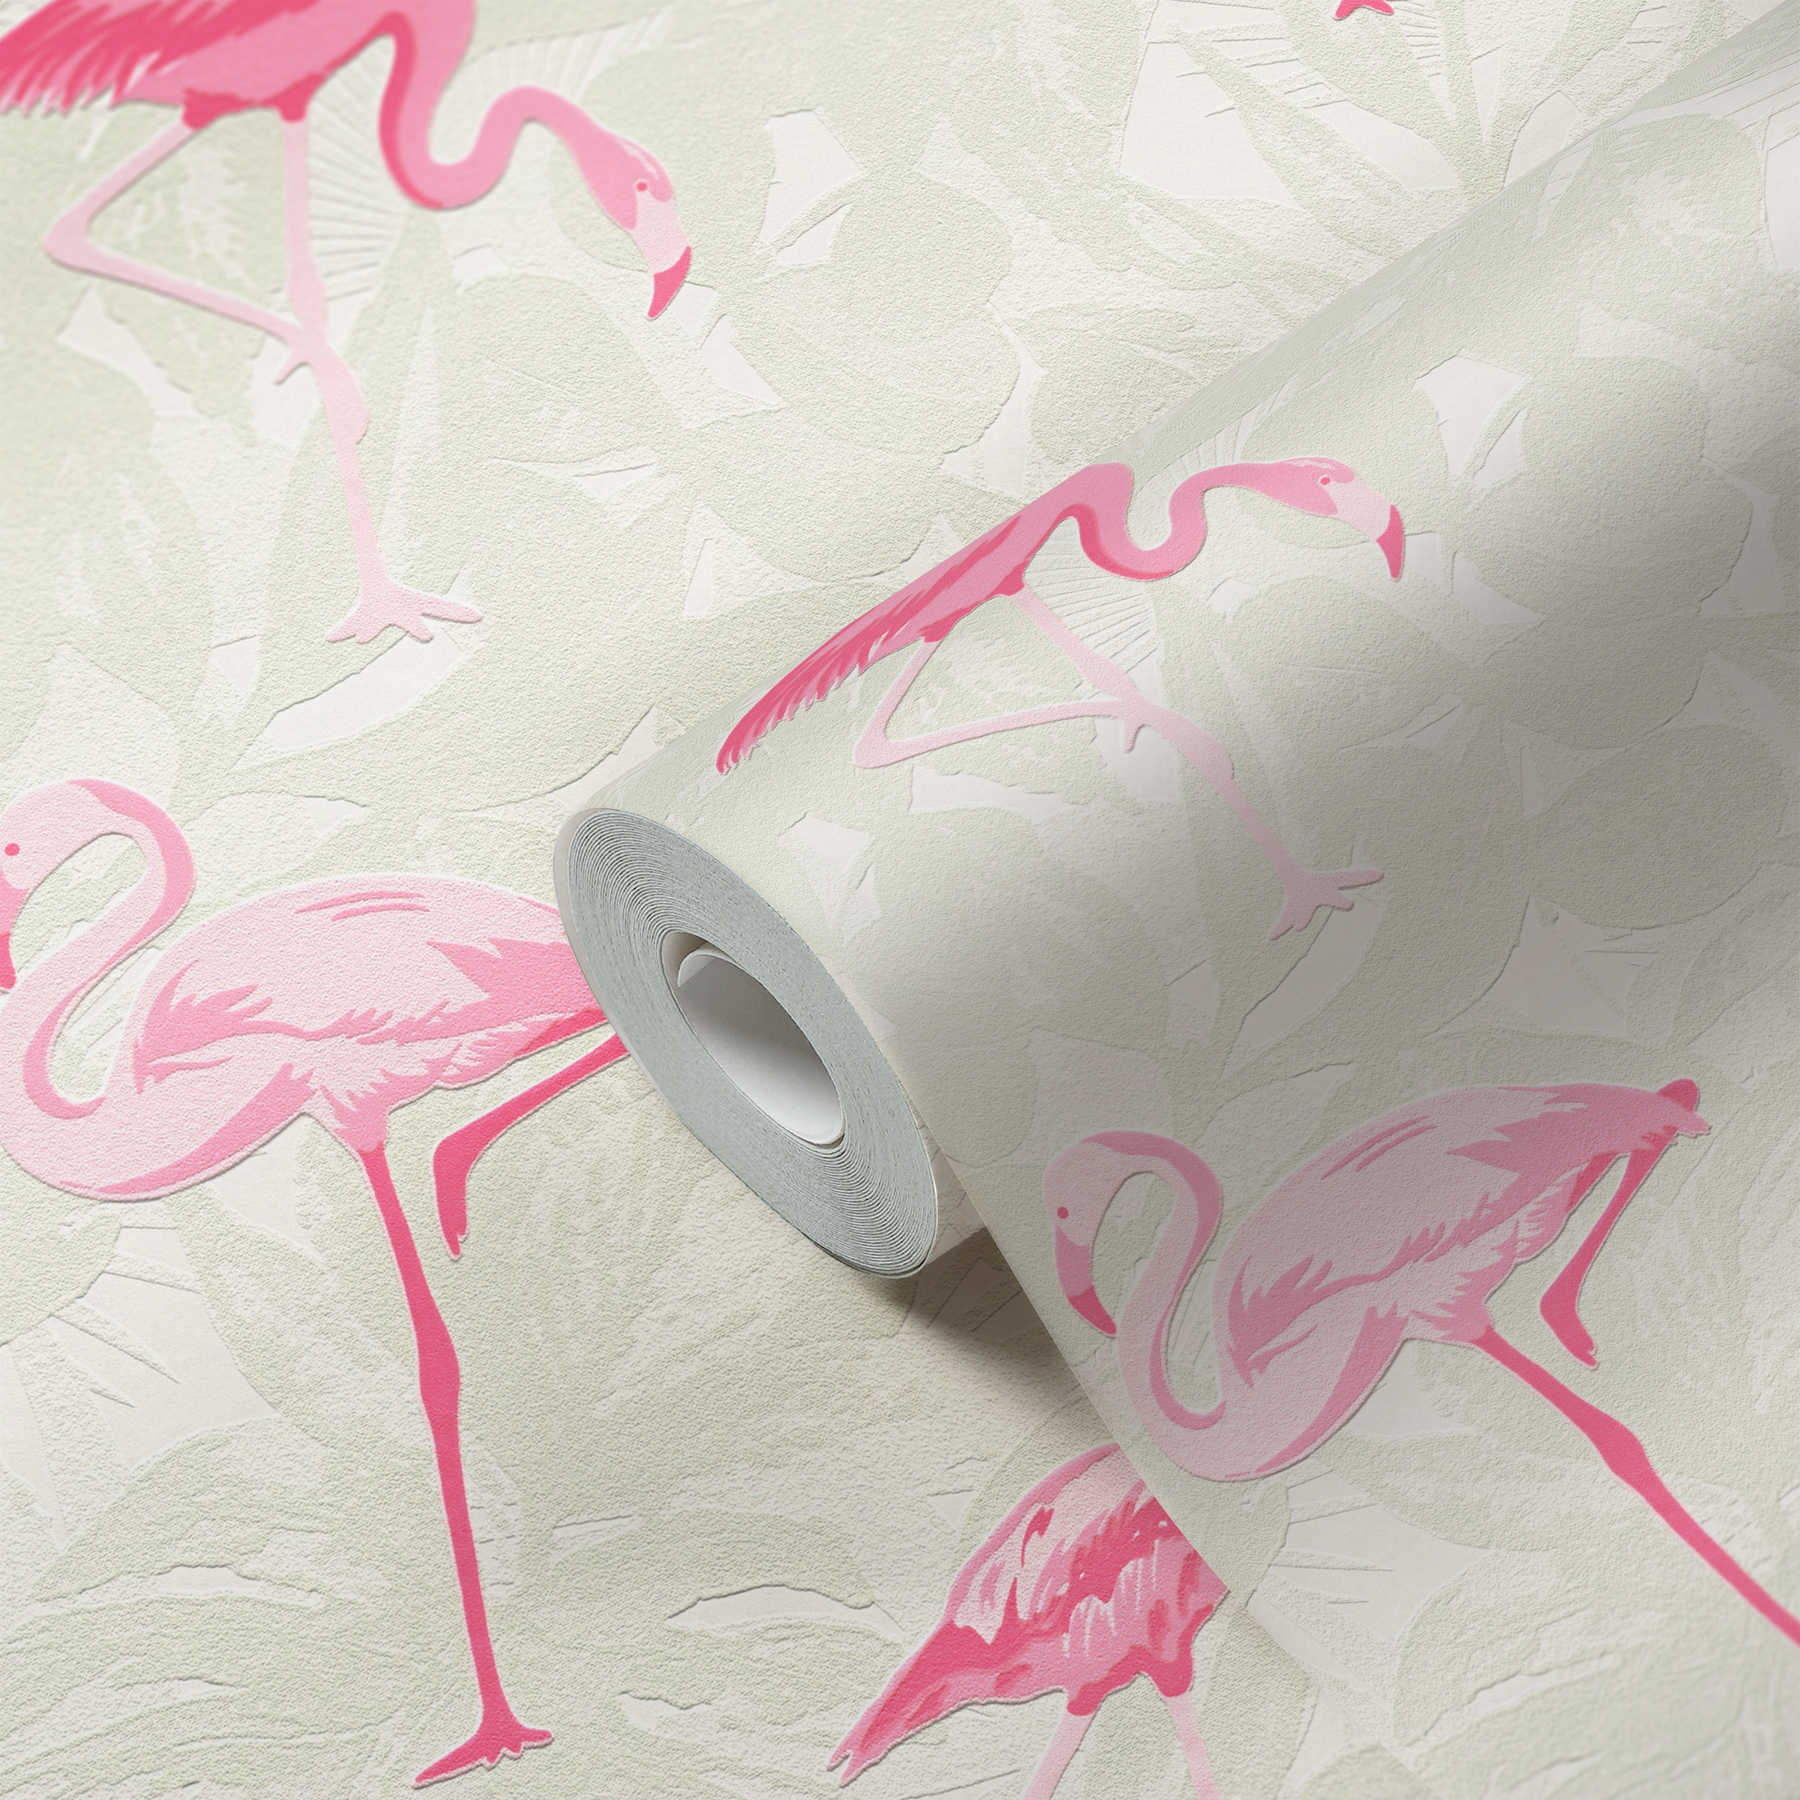             Papel pintado Flamingo con hojas tropicales - rosa, crema
        